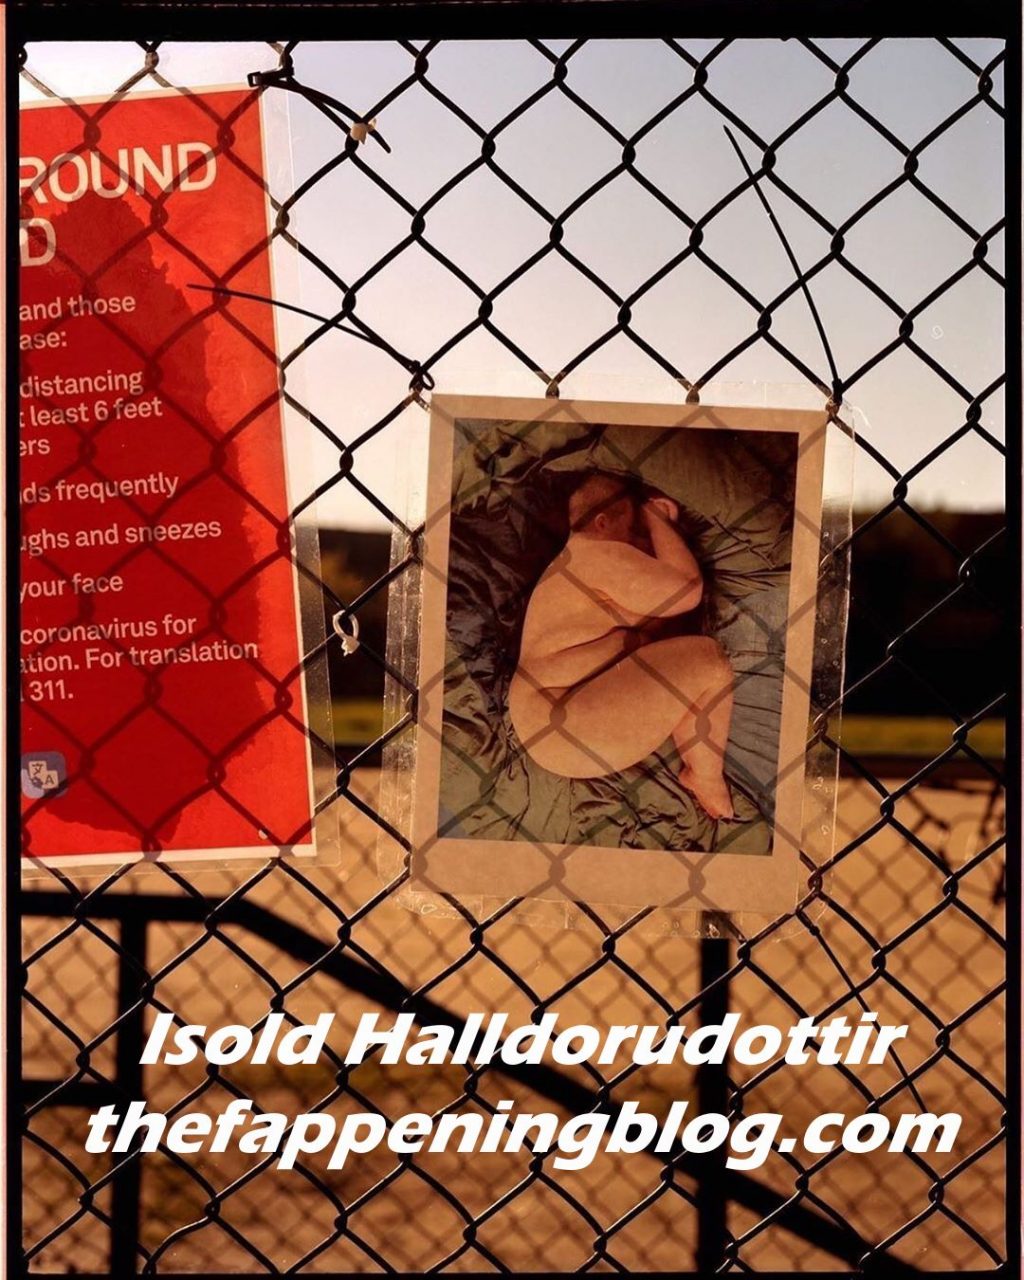 Isold Halldorudottir Sexy (14 Photos)